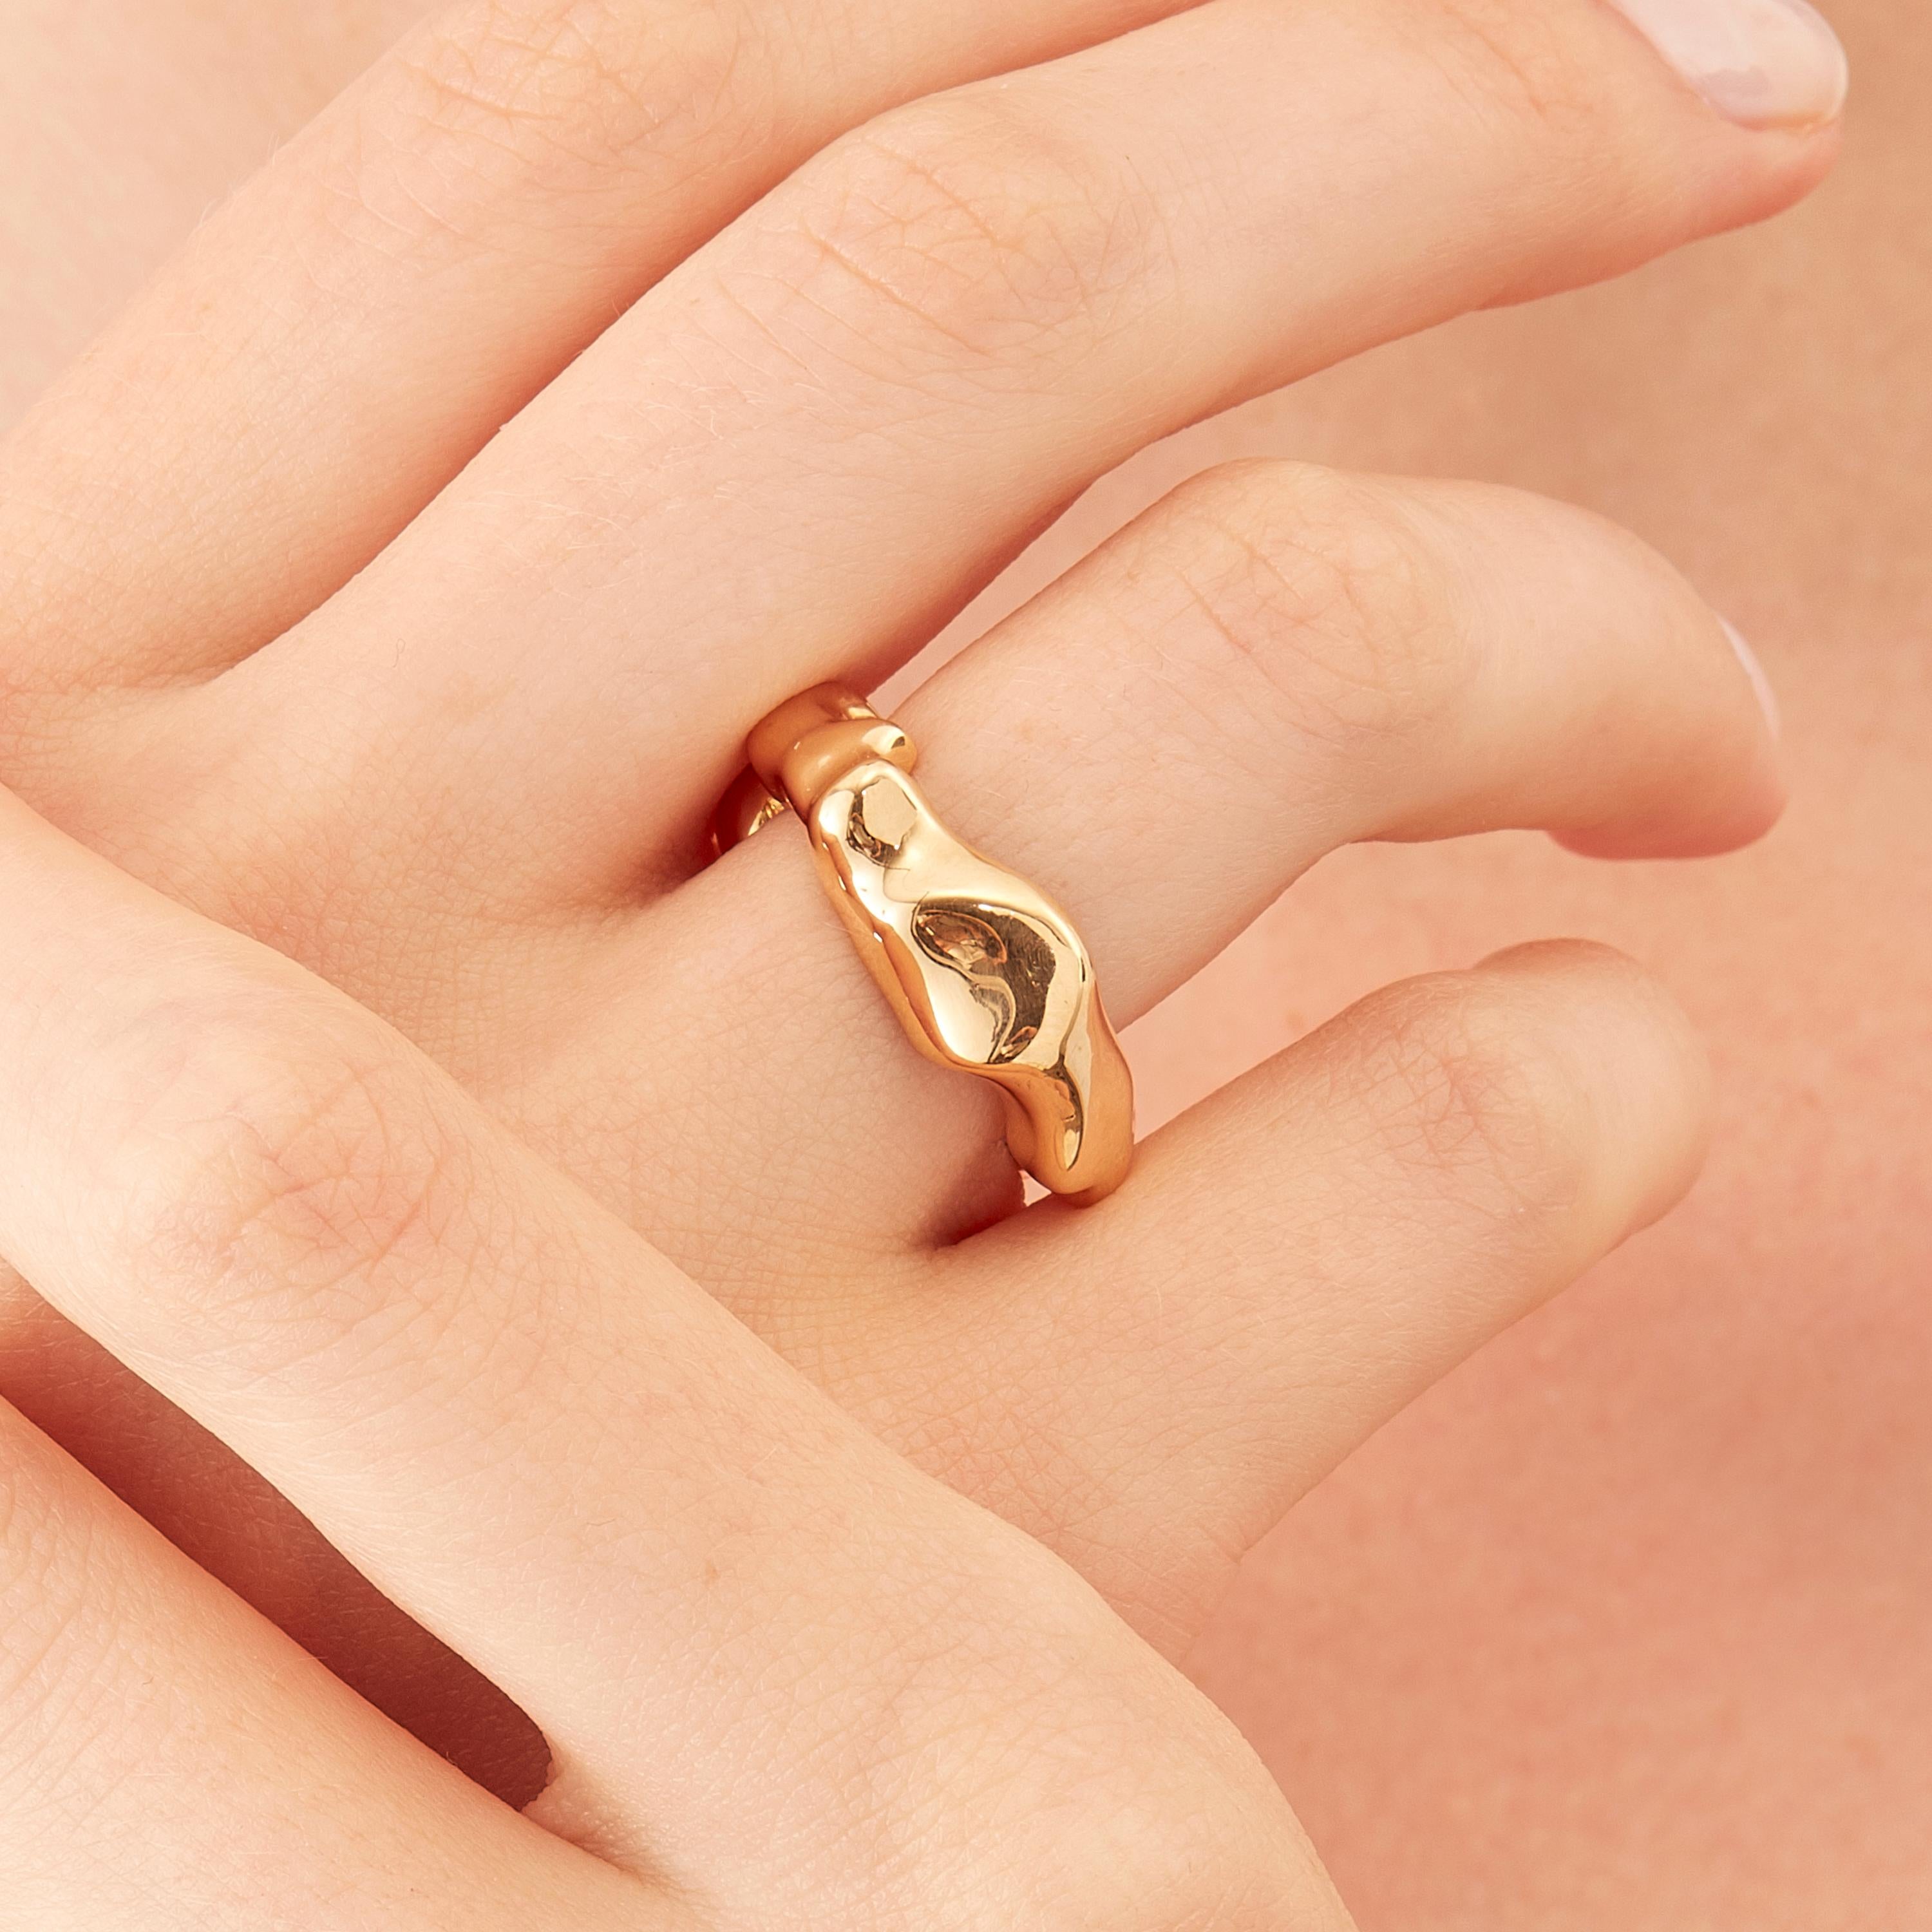 Der in limitierter Auflage im Mailänder Atelier von Nathalie Jean handgefertigte Mercure Fashion Ring besteht aus 18 Karat Roségold, einer warmen, edlen Farbe, die dem Gelbgold nahe kommt. Kleine, zierliche, vibrierende Skulpturen mit scheinbar